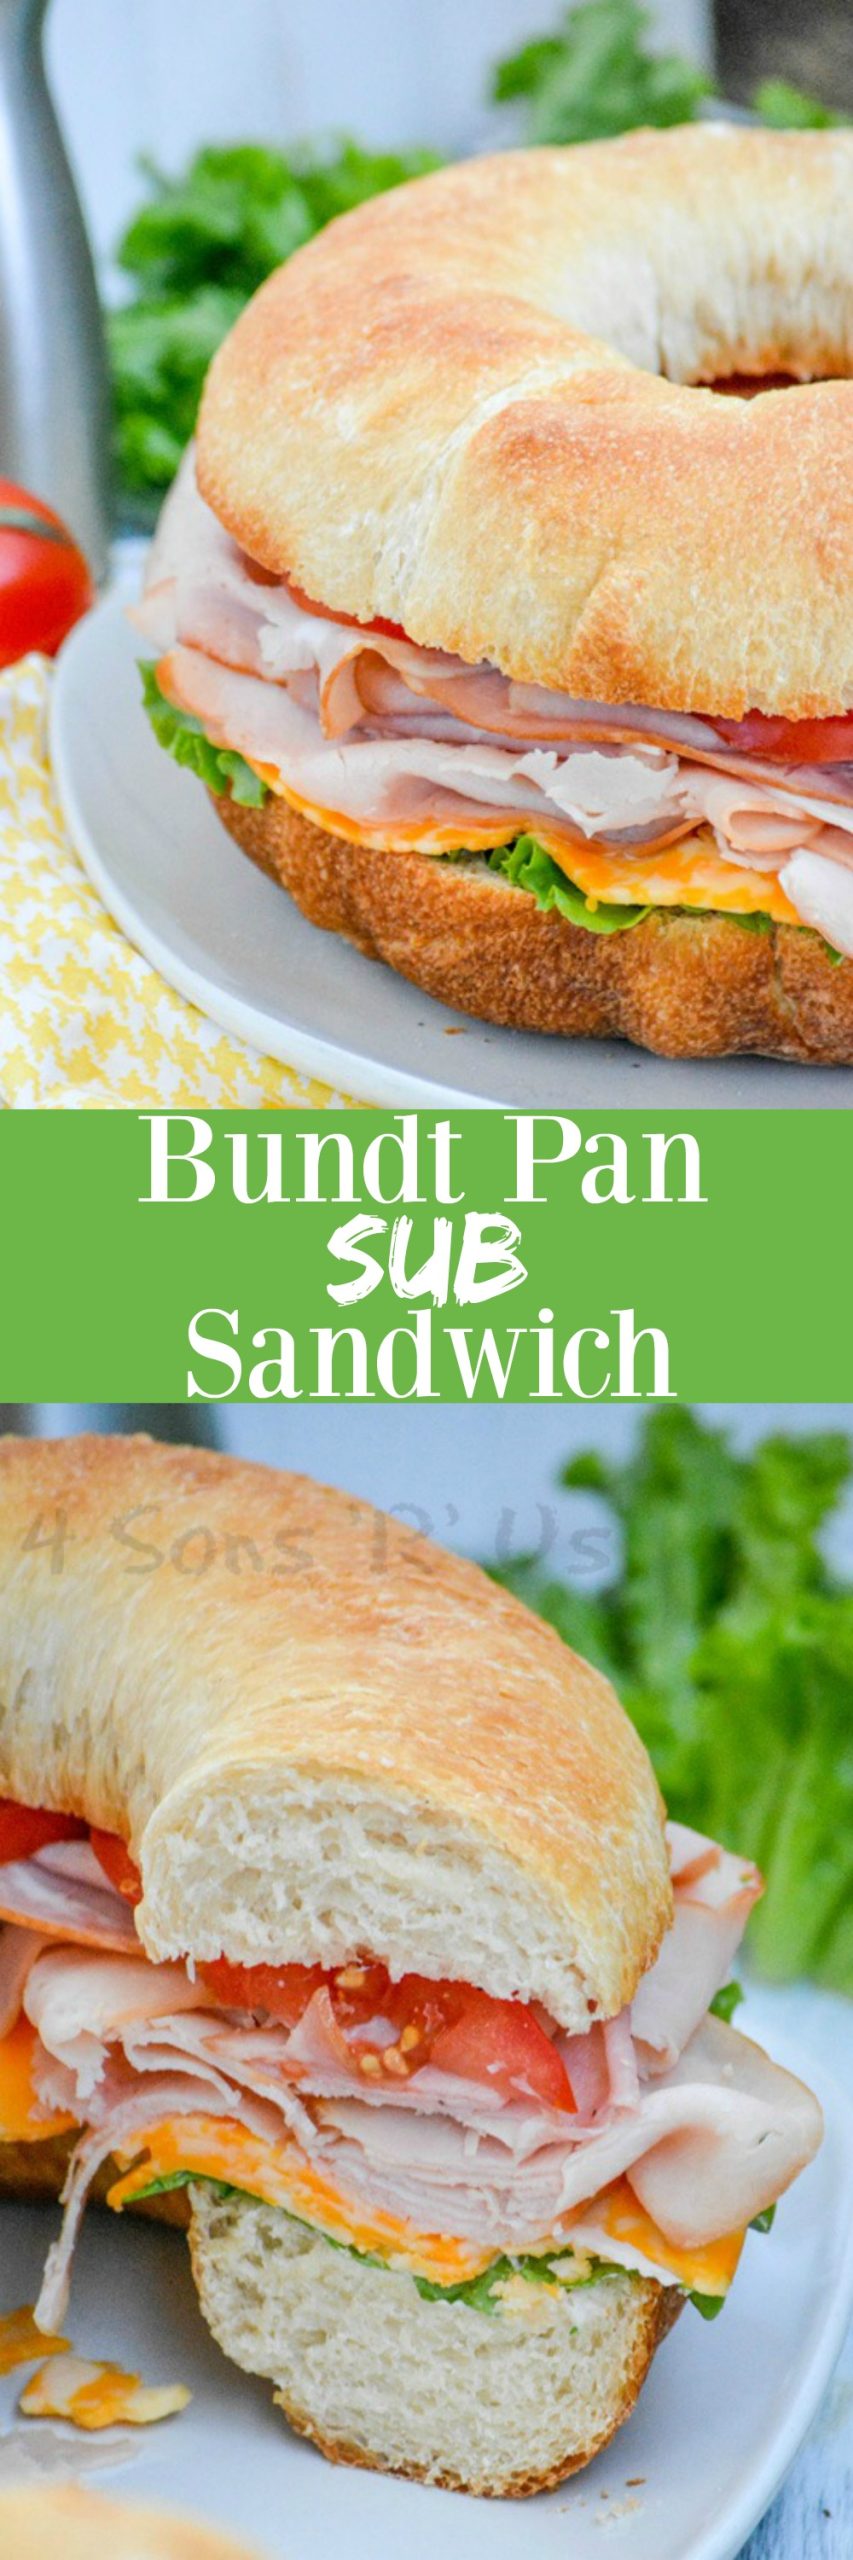 Cold Cut Bundt Pan Sub Sandwich - 4 Sons 'R' Us